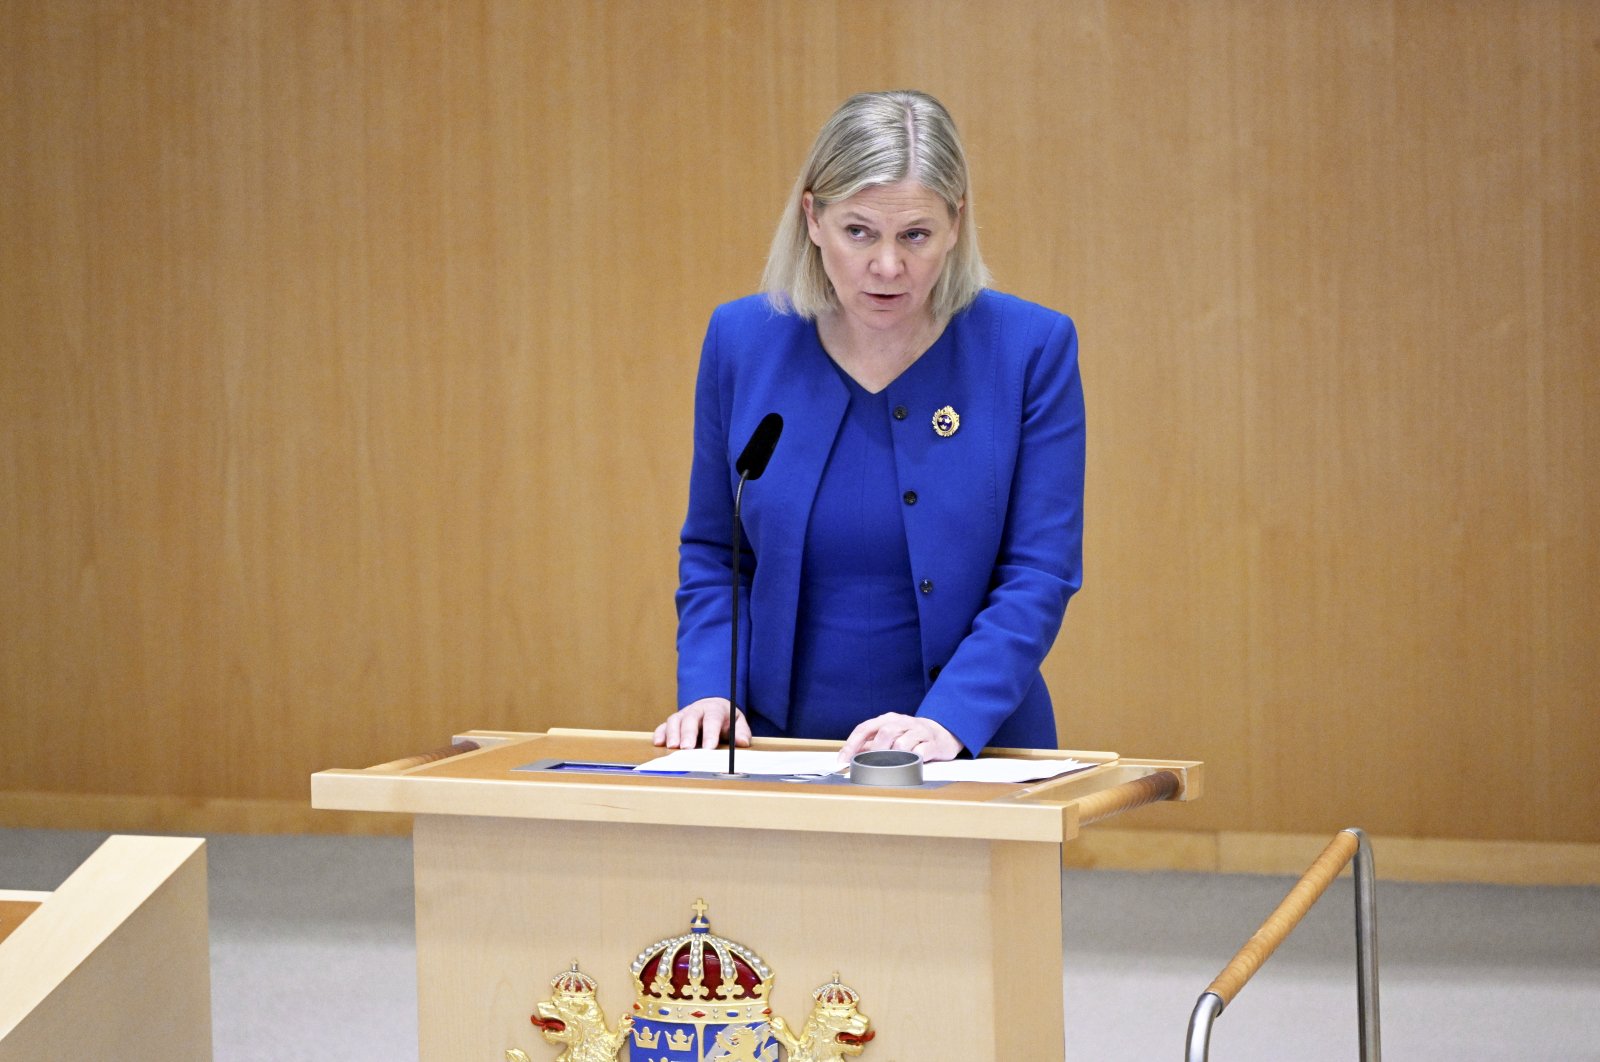 Netralitas berakhir: Swedia akan mengajukan keanggotaan NATO